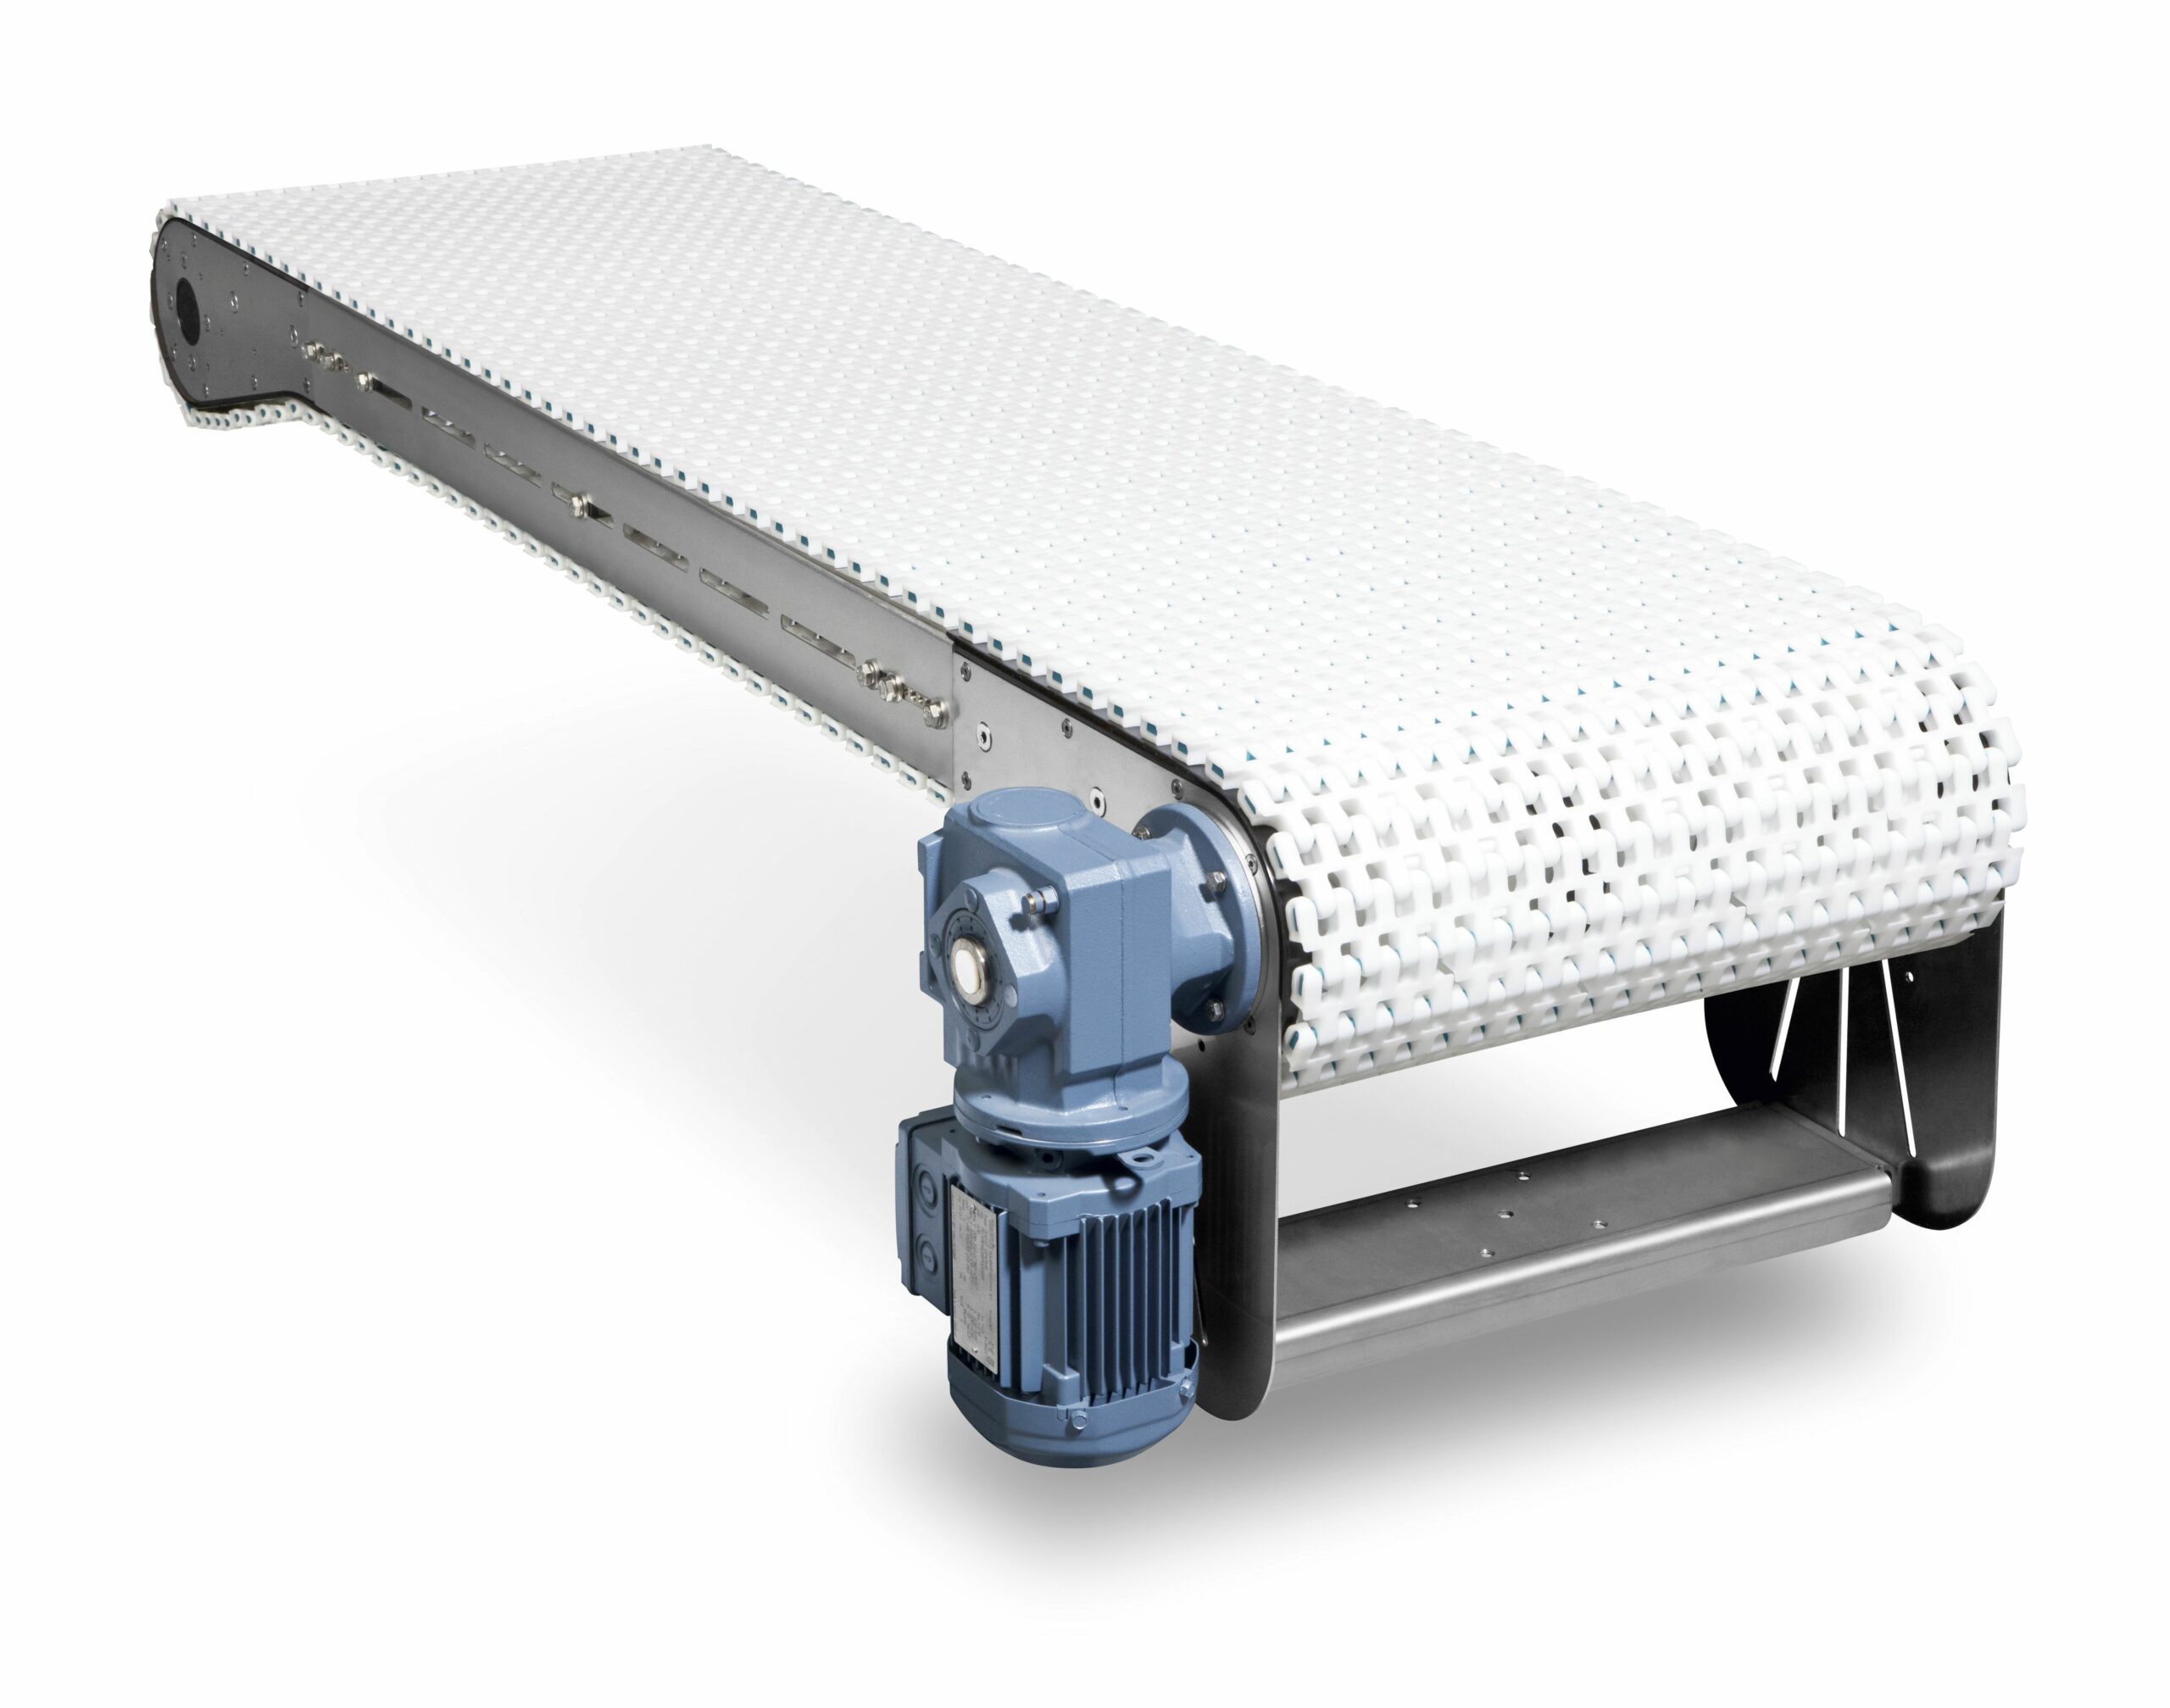 Modular Belt Conveyor Systems Conveyor Manufacturer Connectaveyor